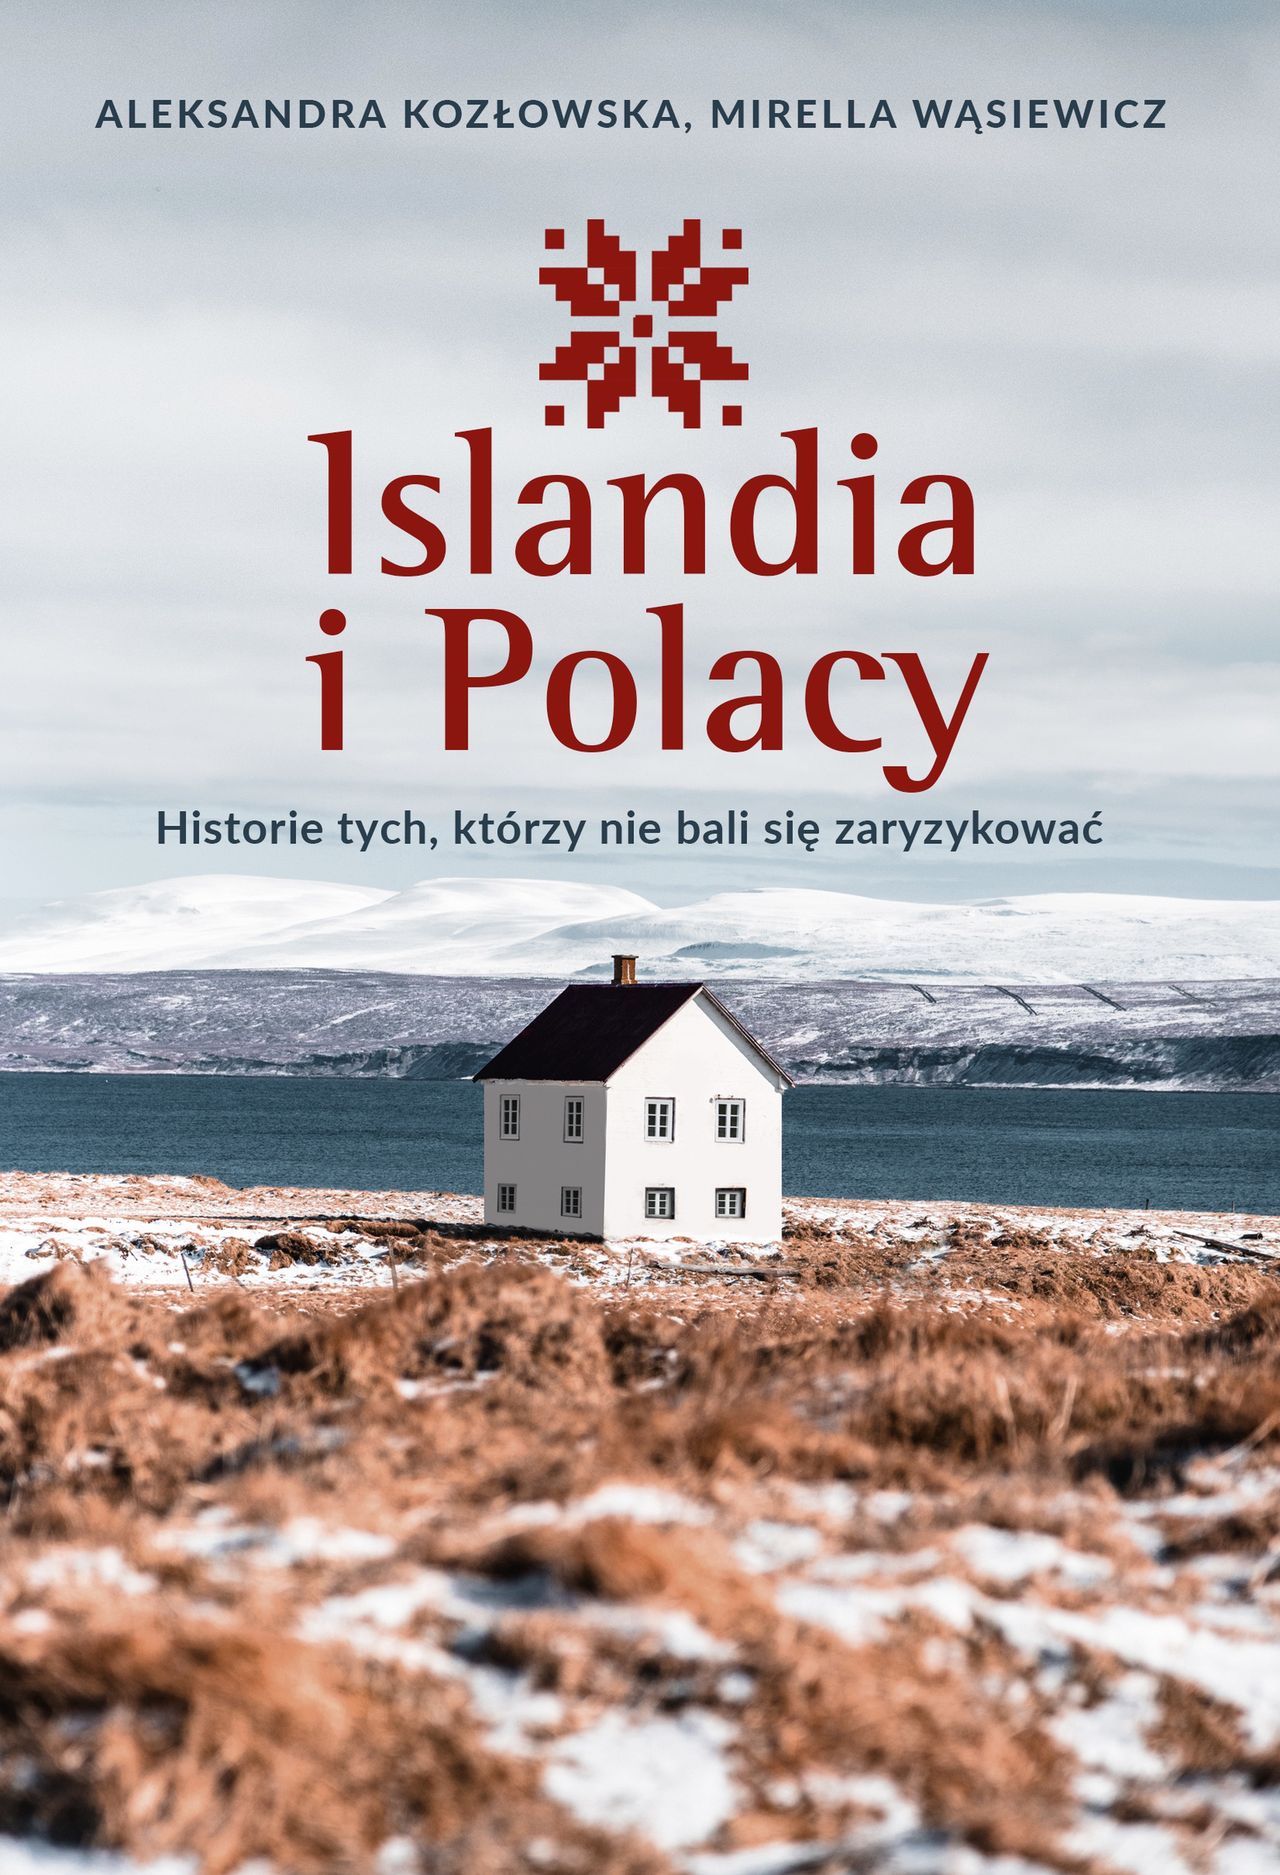 Okładka książki "Islandia i Polacy. Historie tych, którzy nie bali się zaryzykować"